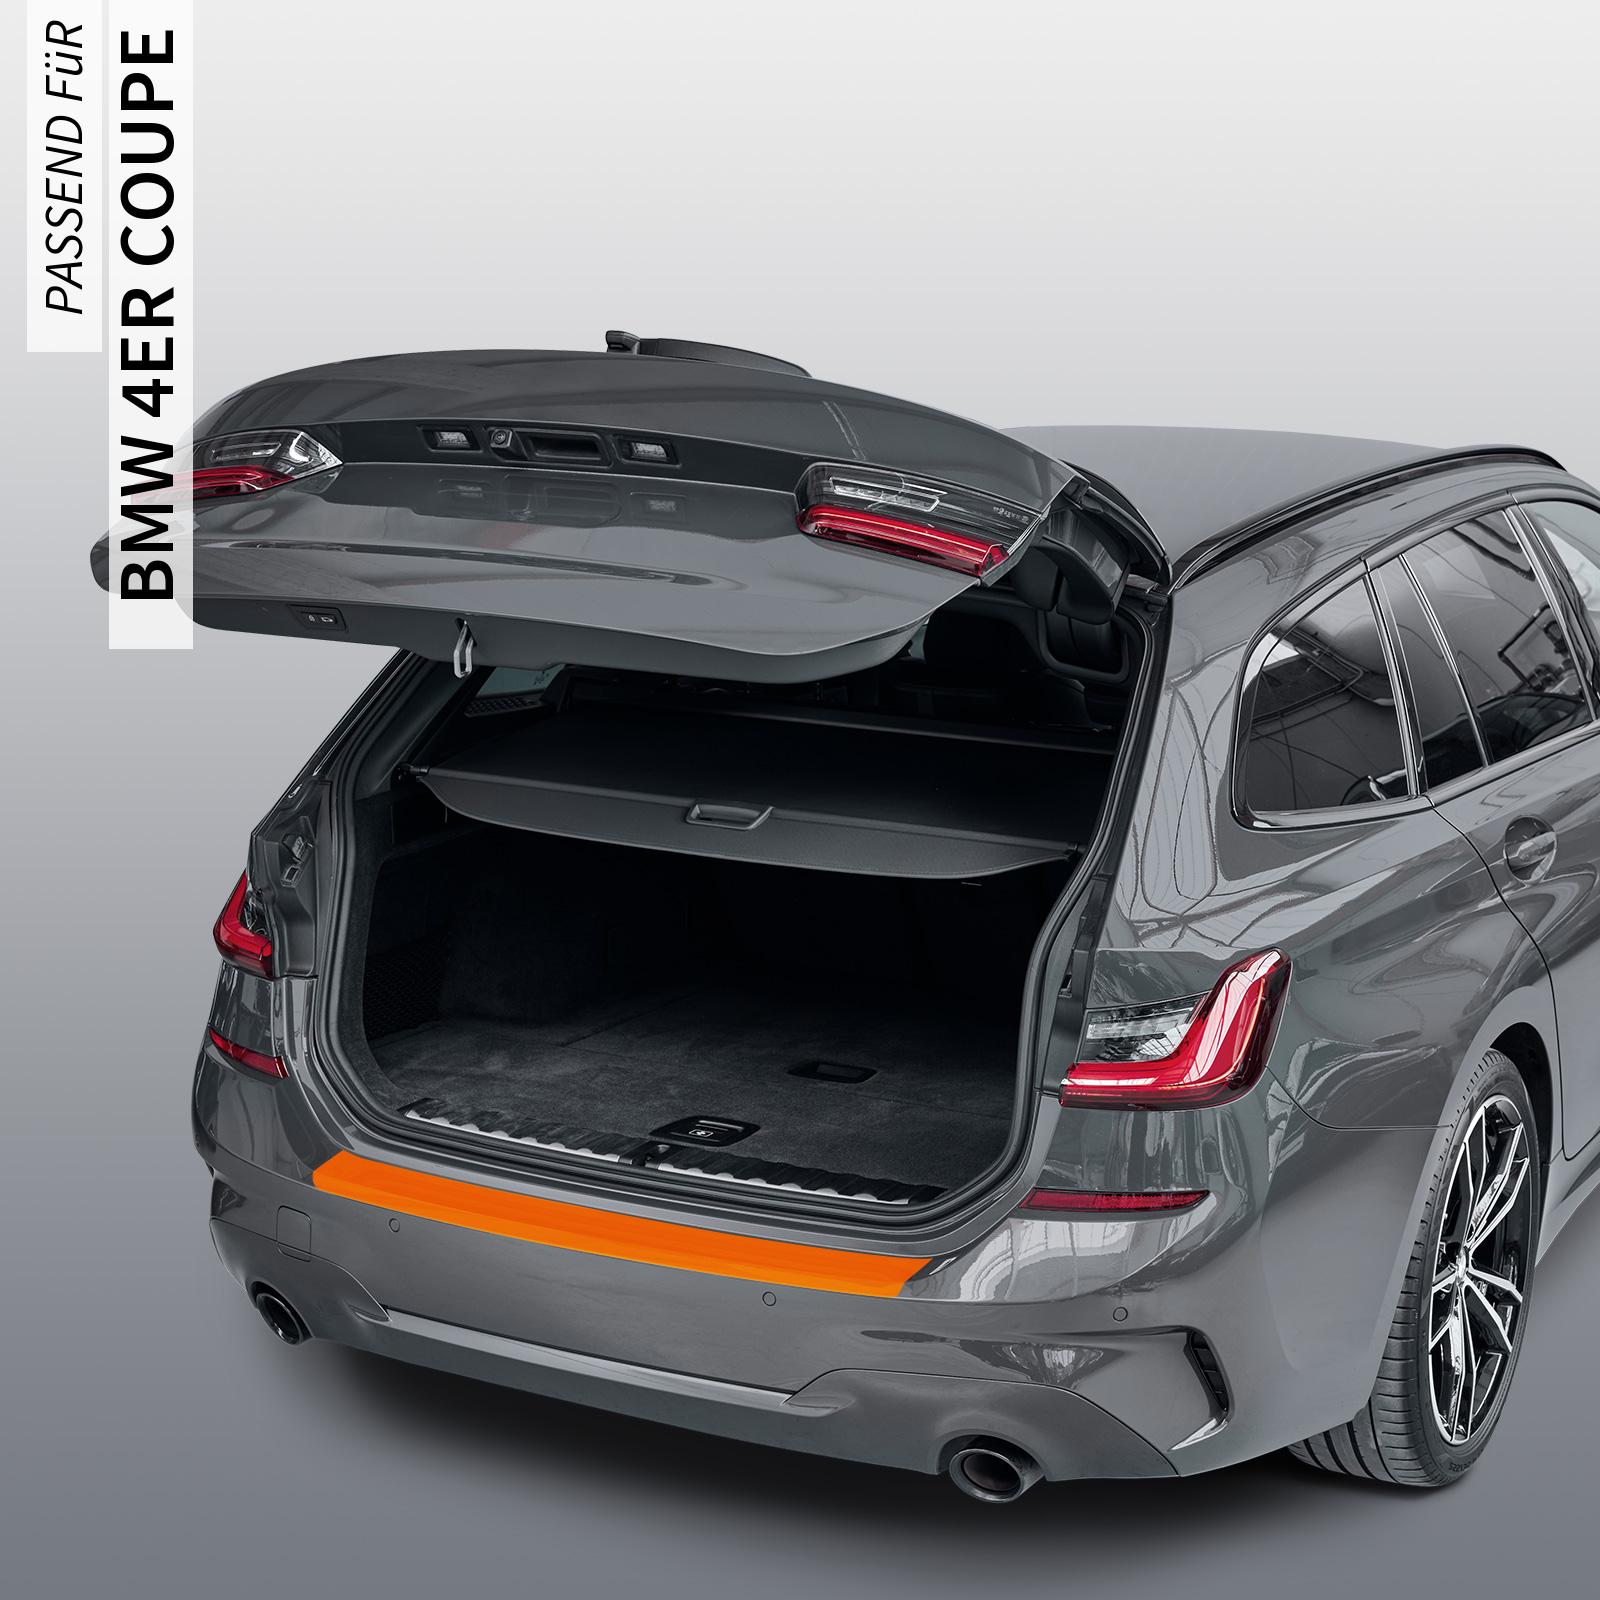 Ladekantenschutzfolie - Transparent Glatt Hochglänzend 150 µm stark für BMW 4er Coupe Typ G22, ab BJ 10/2020